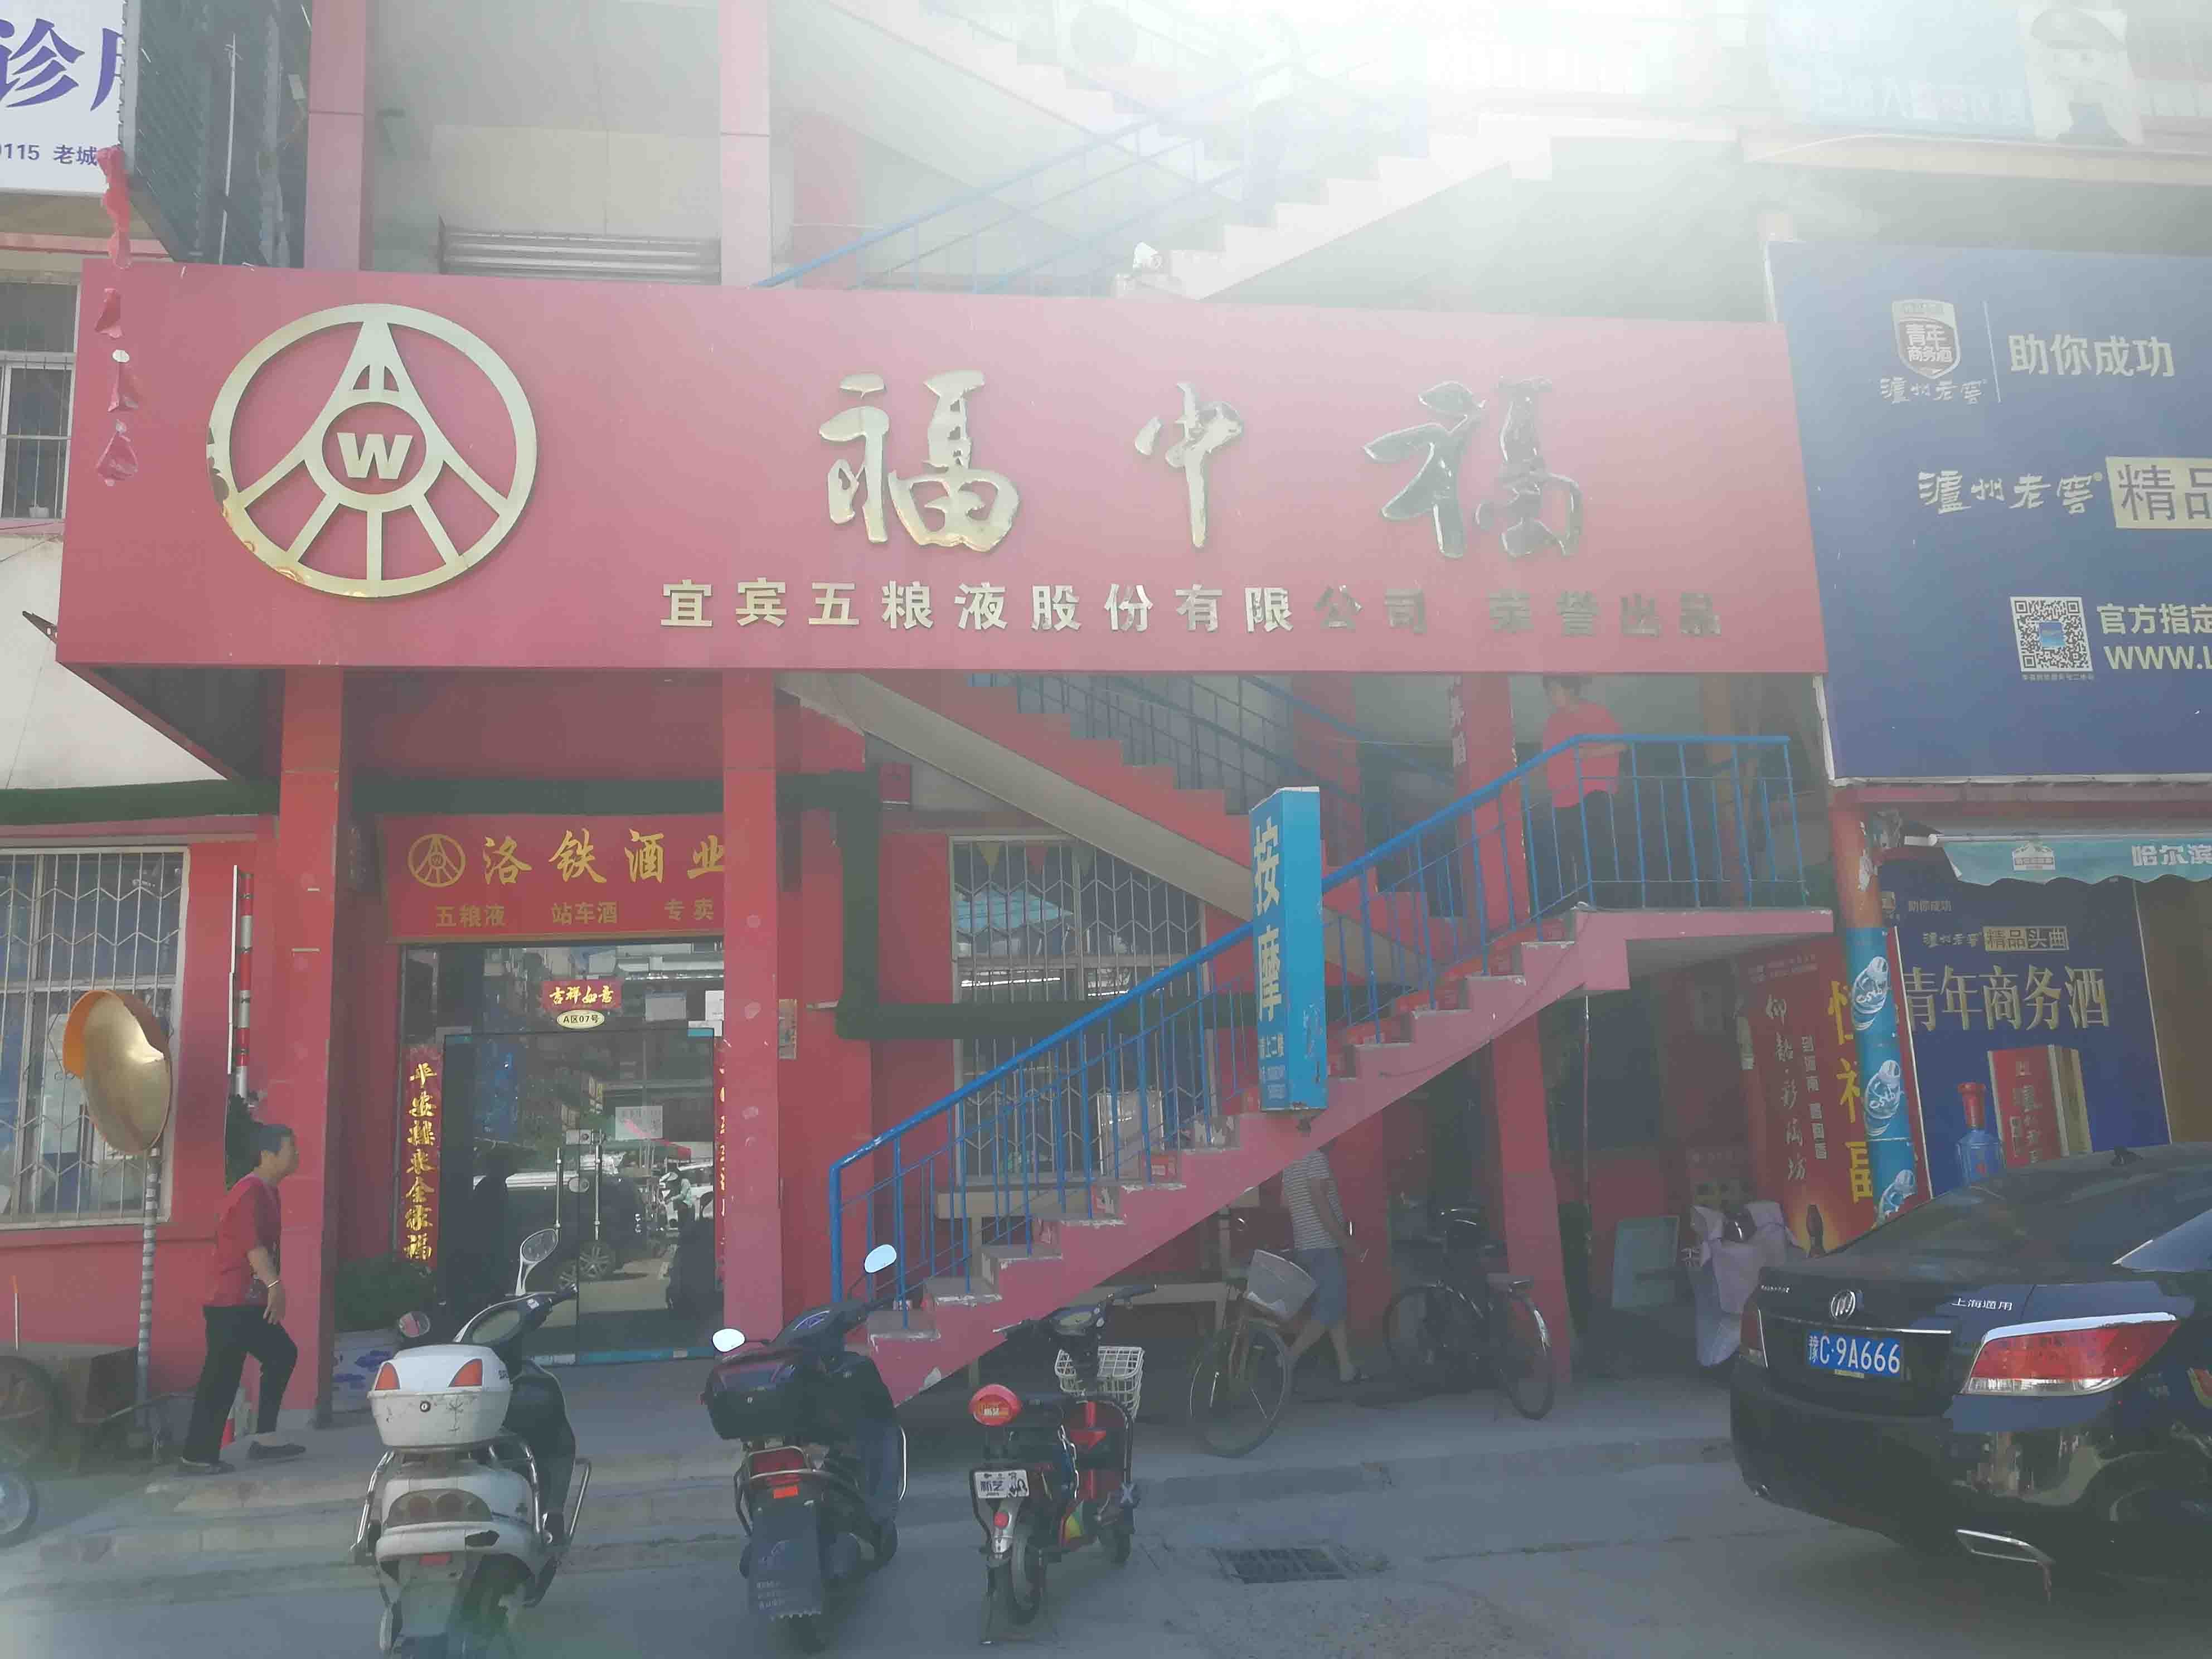 上海市场南街洛阳商业地产出租服务，提供舞蹈的商铺和写字楼选项。无论您是企业还是成熟企业，我们的列表都能满足您的需求